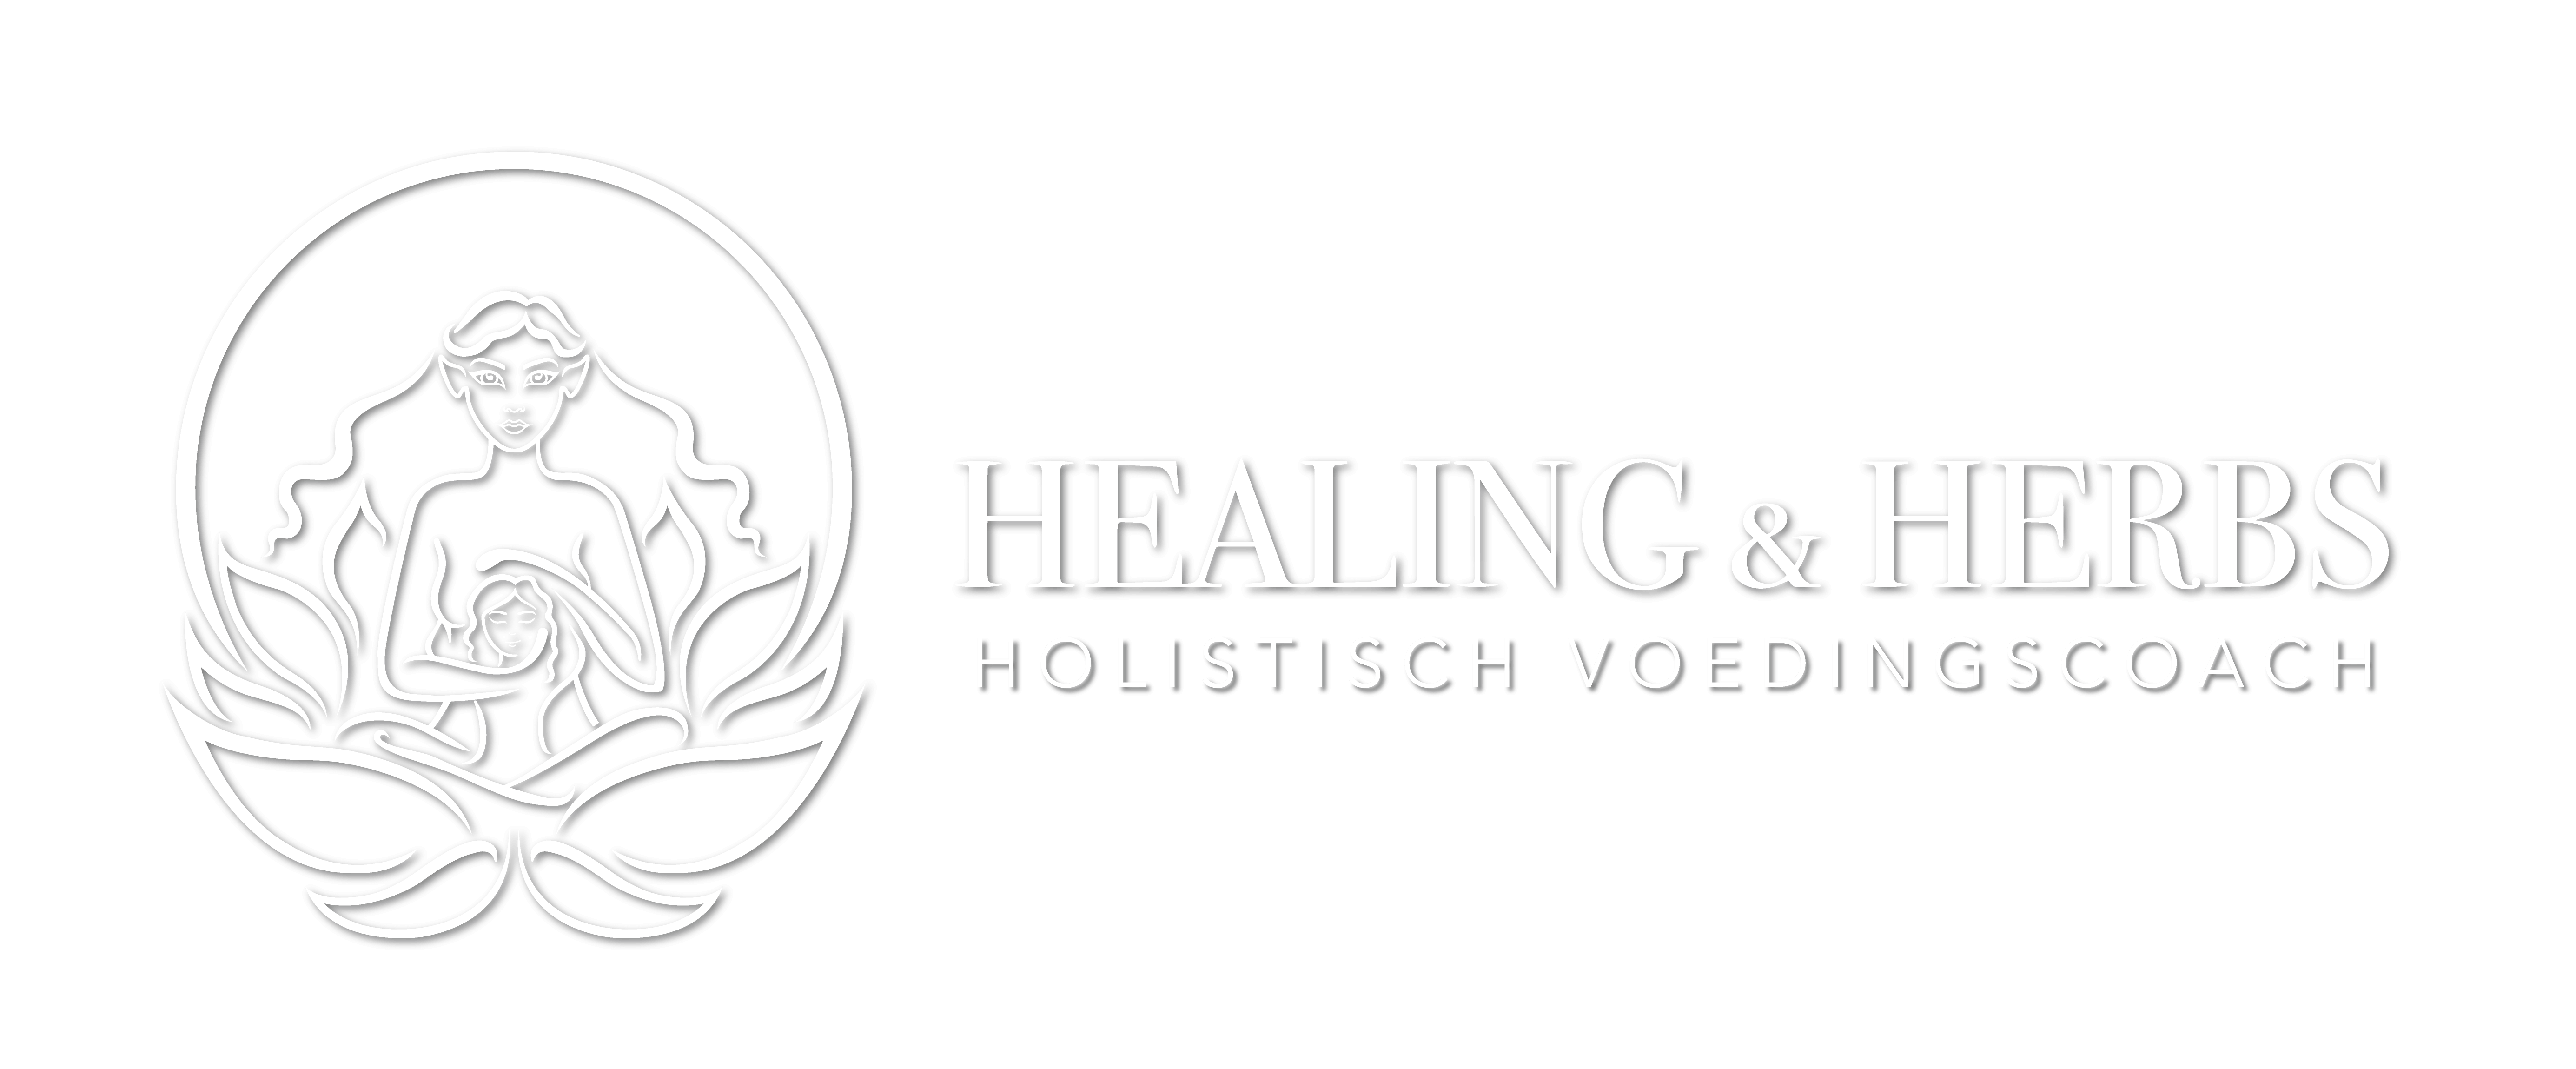 Healing & Herbs